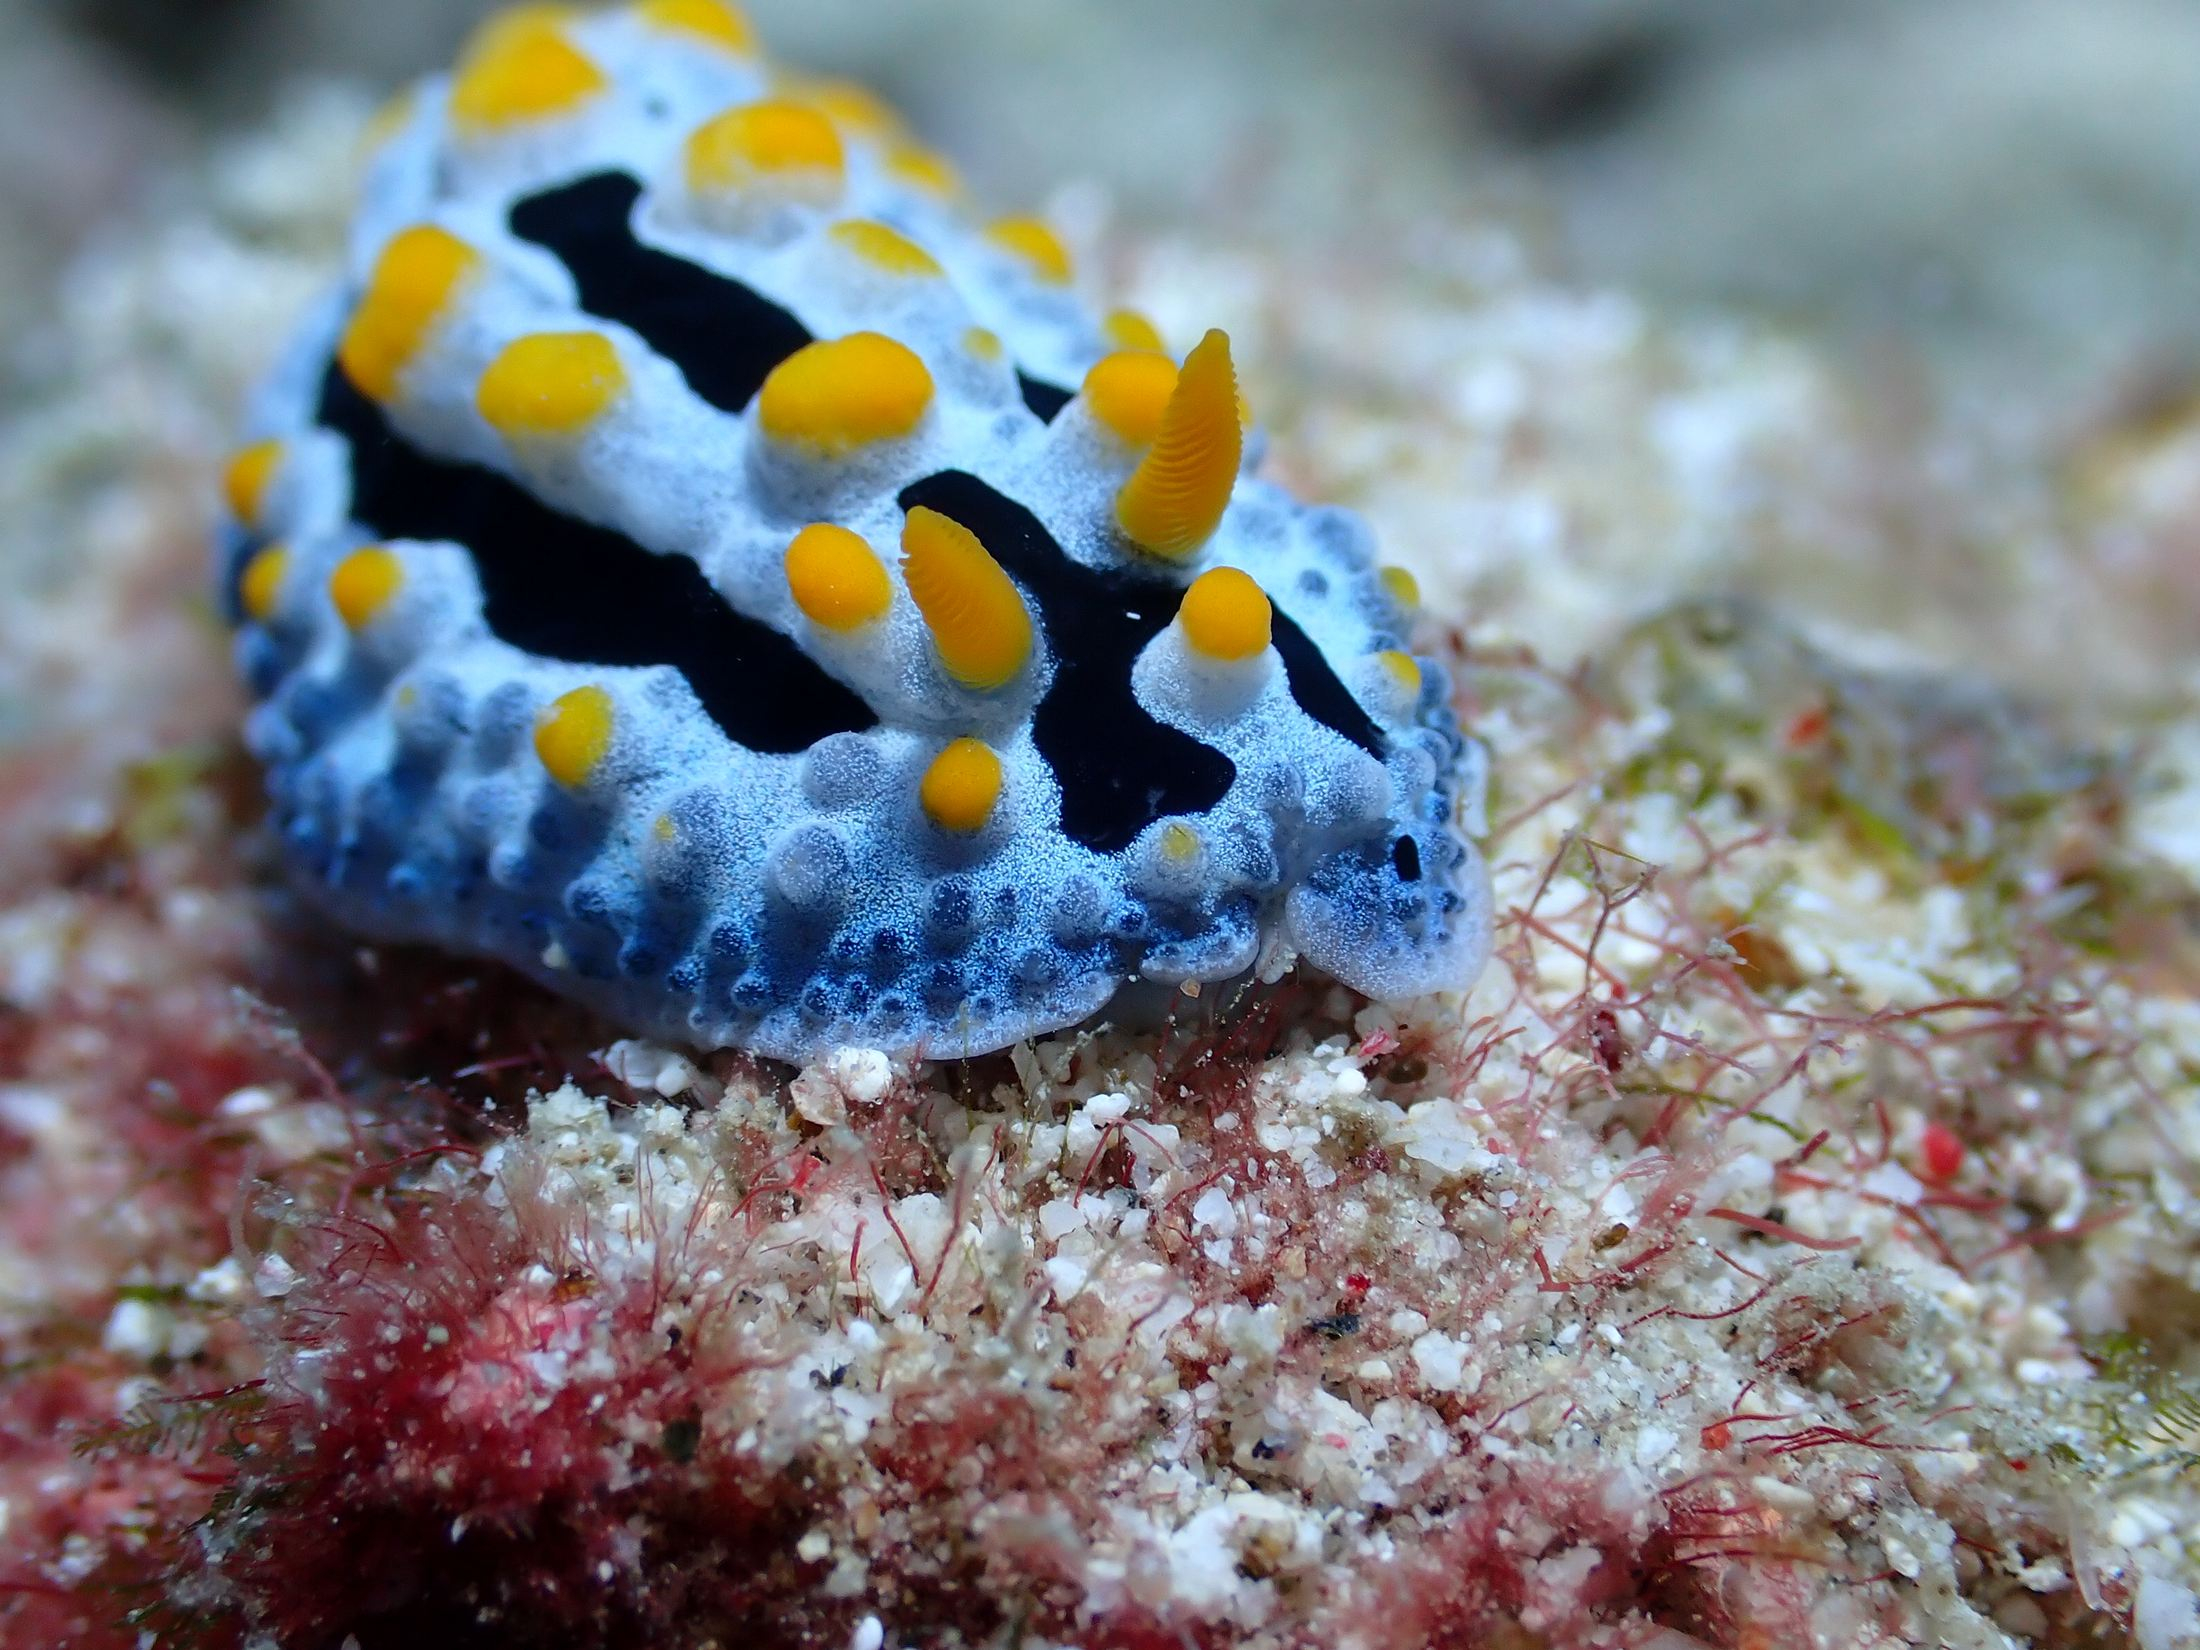 天藍葉海蛞蝓（Phyllidia coelestis），如何在一定時間內把相遇的每位海蛞蝓拍清楚、拍美，是樂此不疲的挑戰。